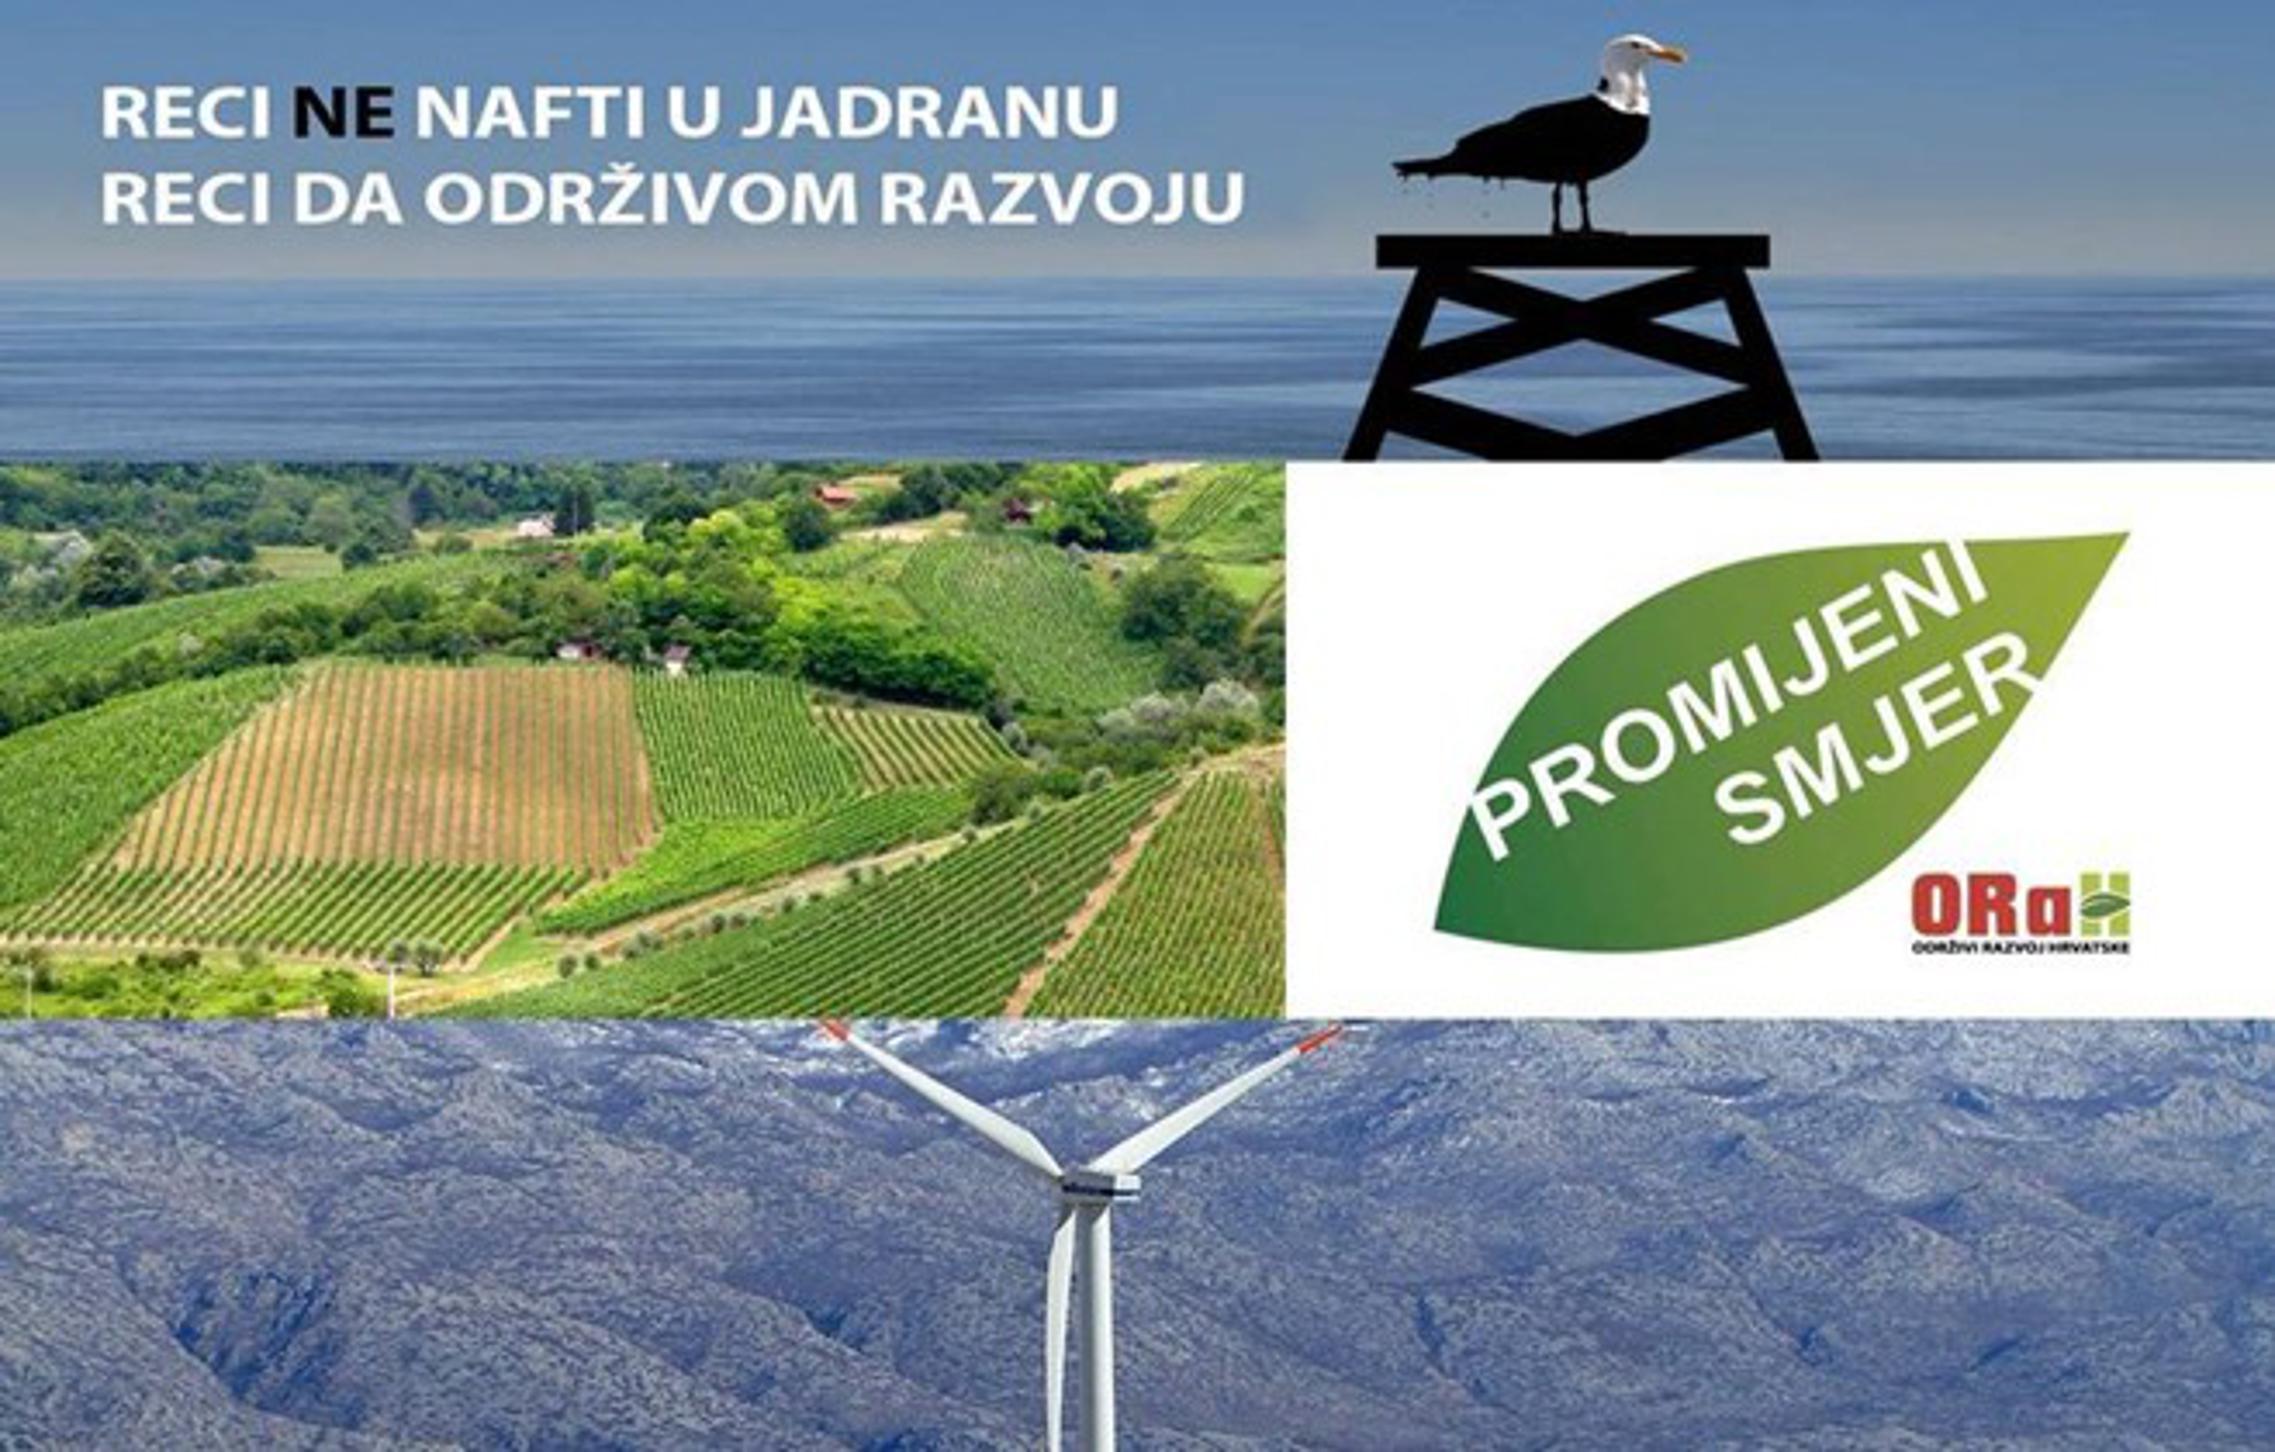 Održivi razvoj Hrvatske (ORAH)